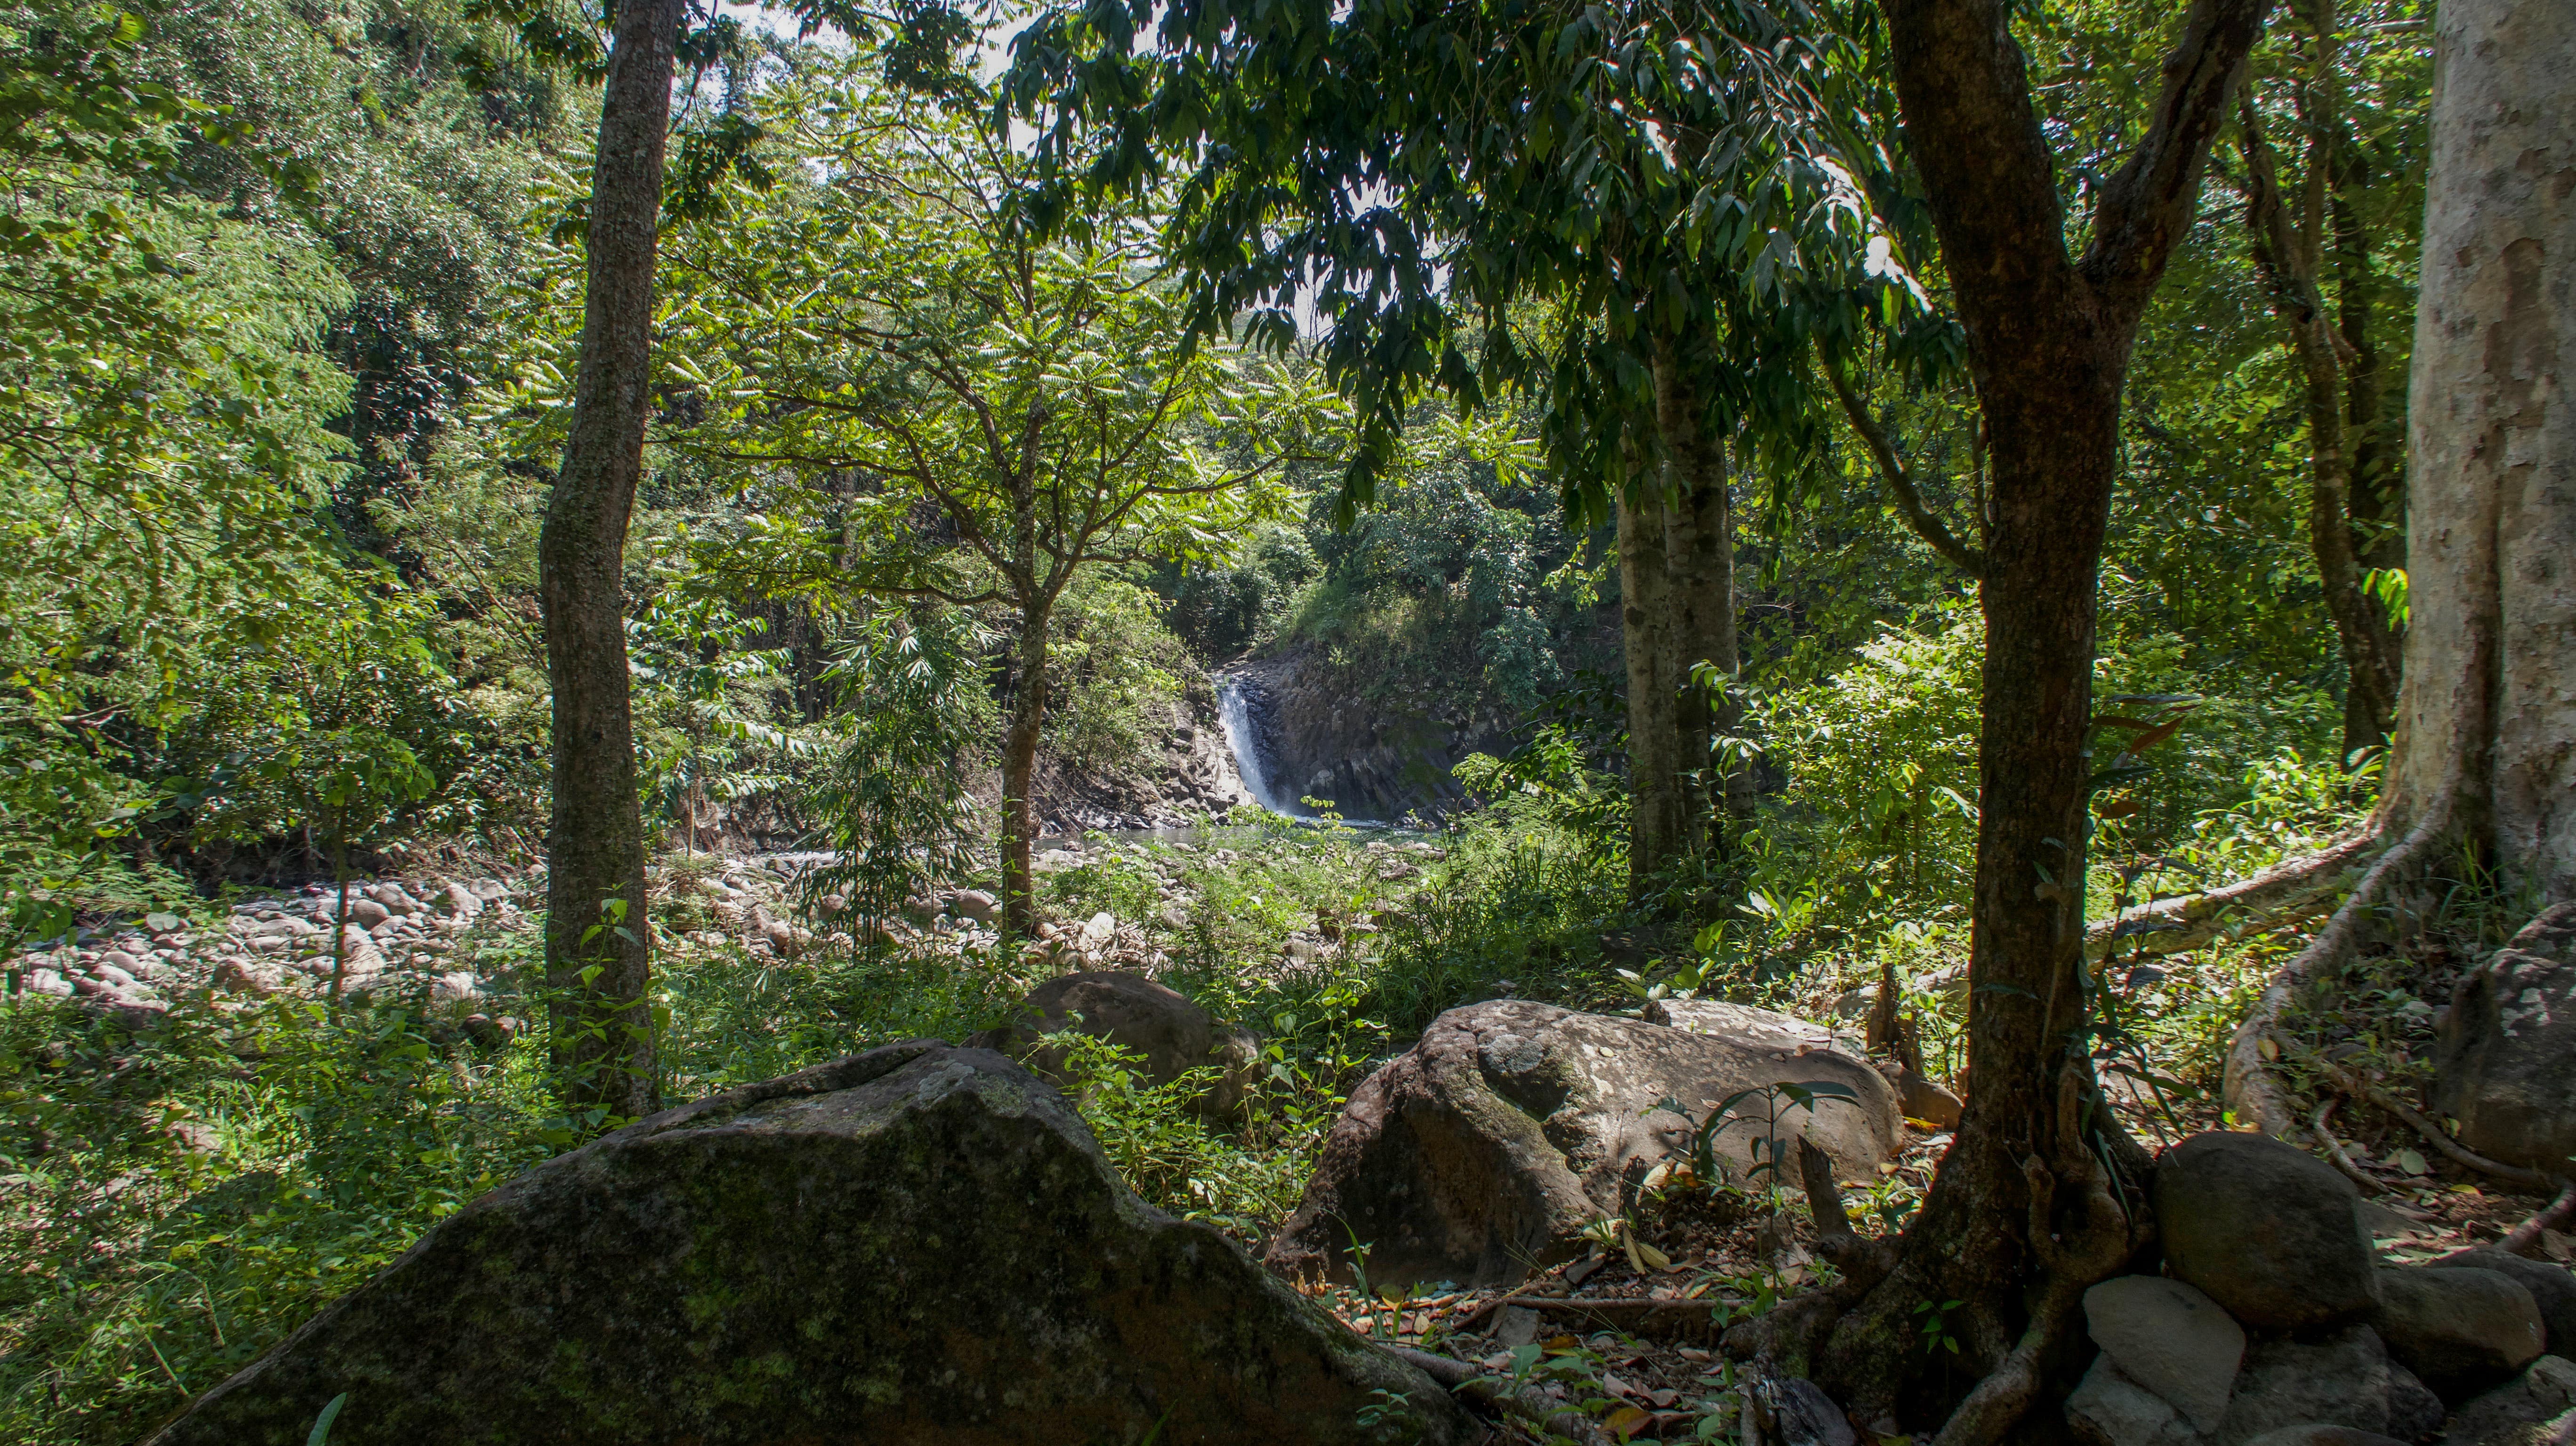 dunsulan falls seen through trees